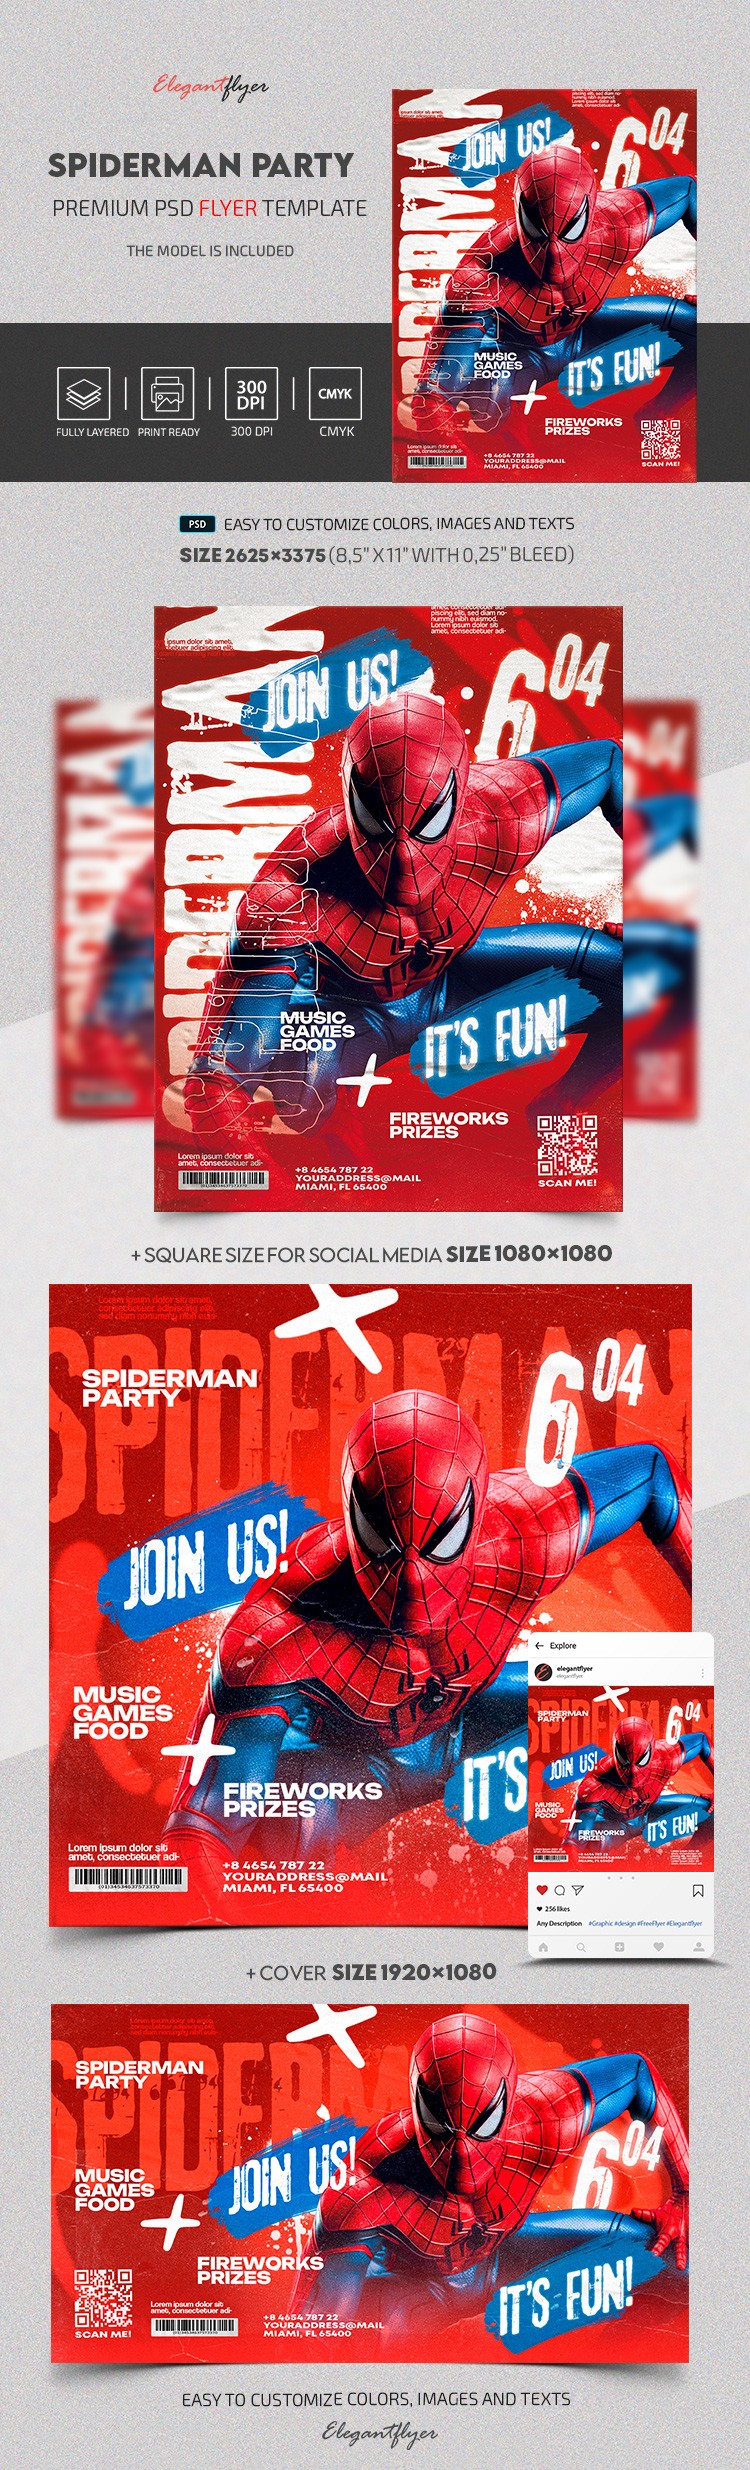 Invitation Spiderman by ElegantFlyer